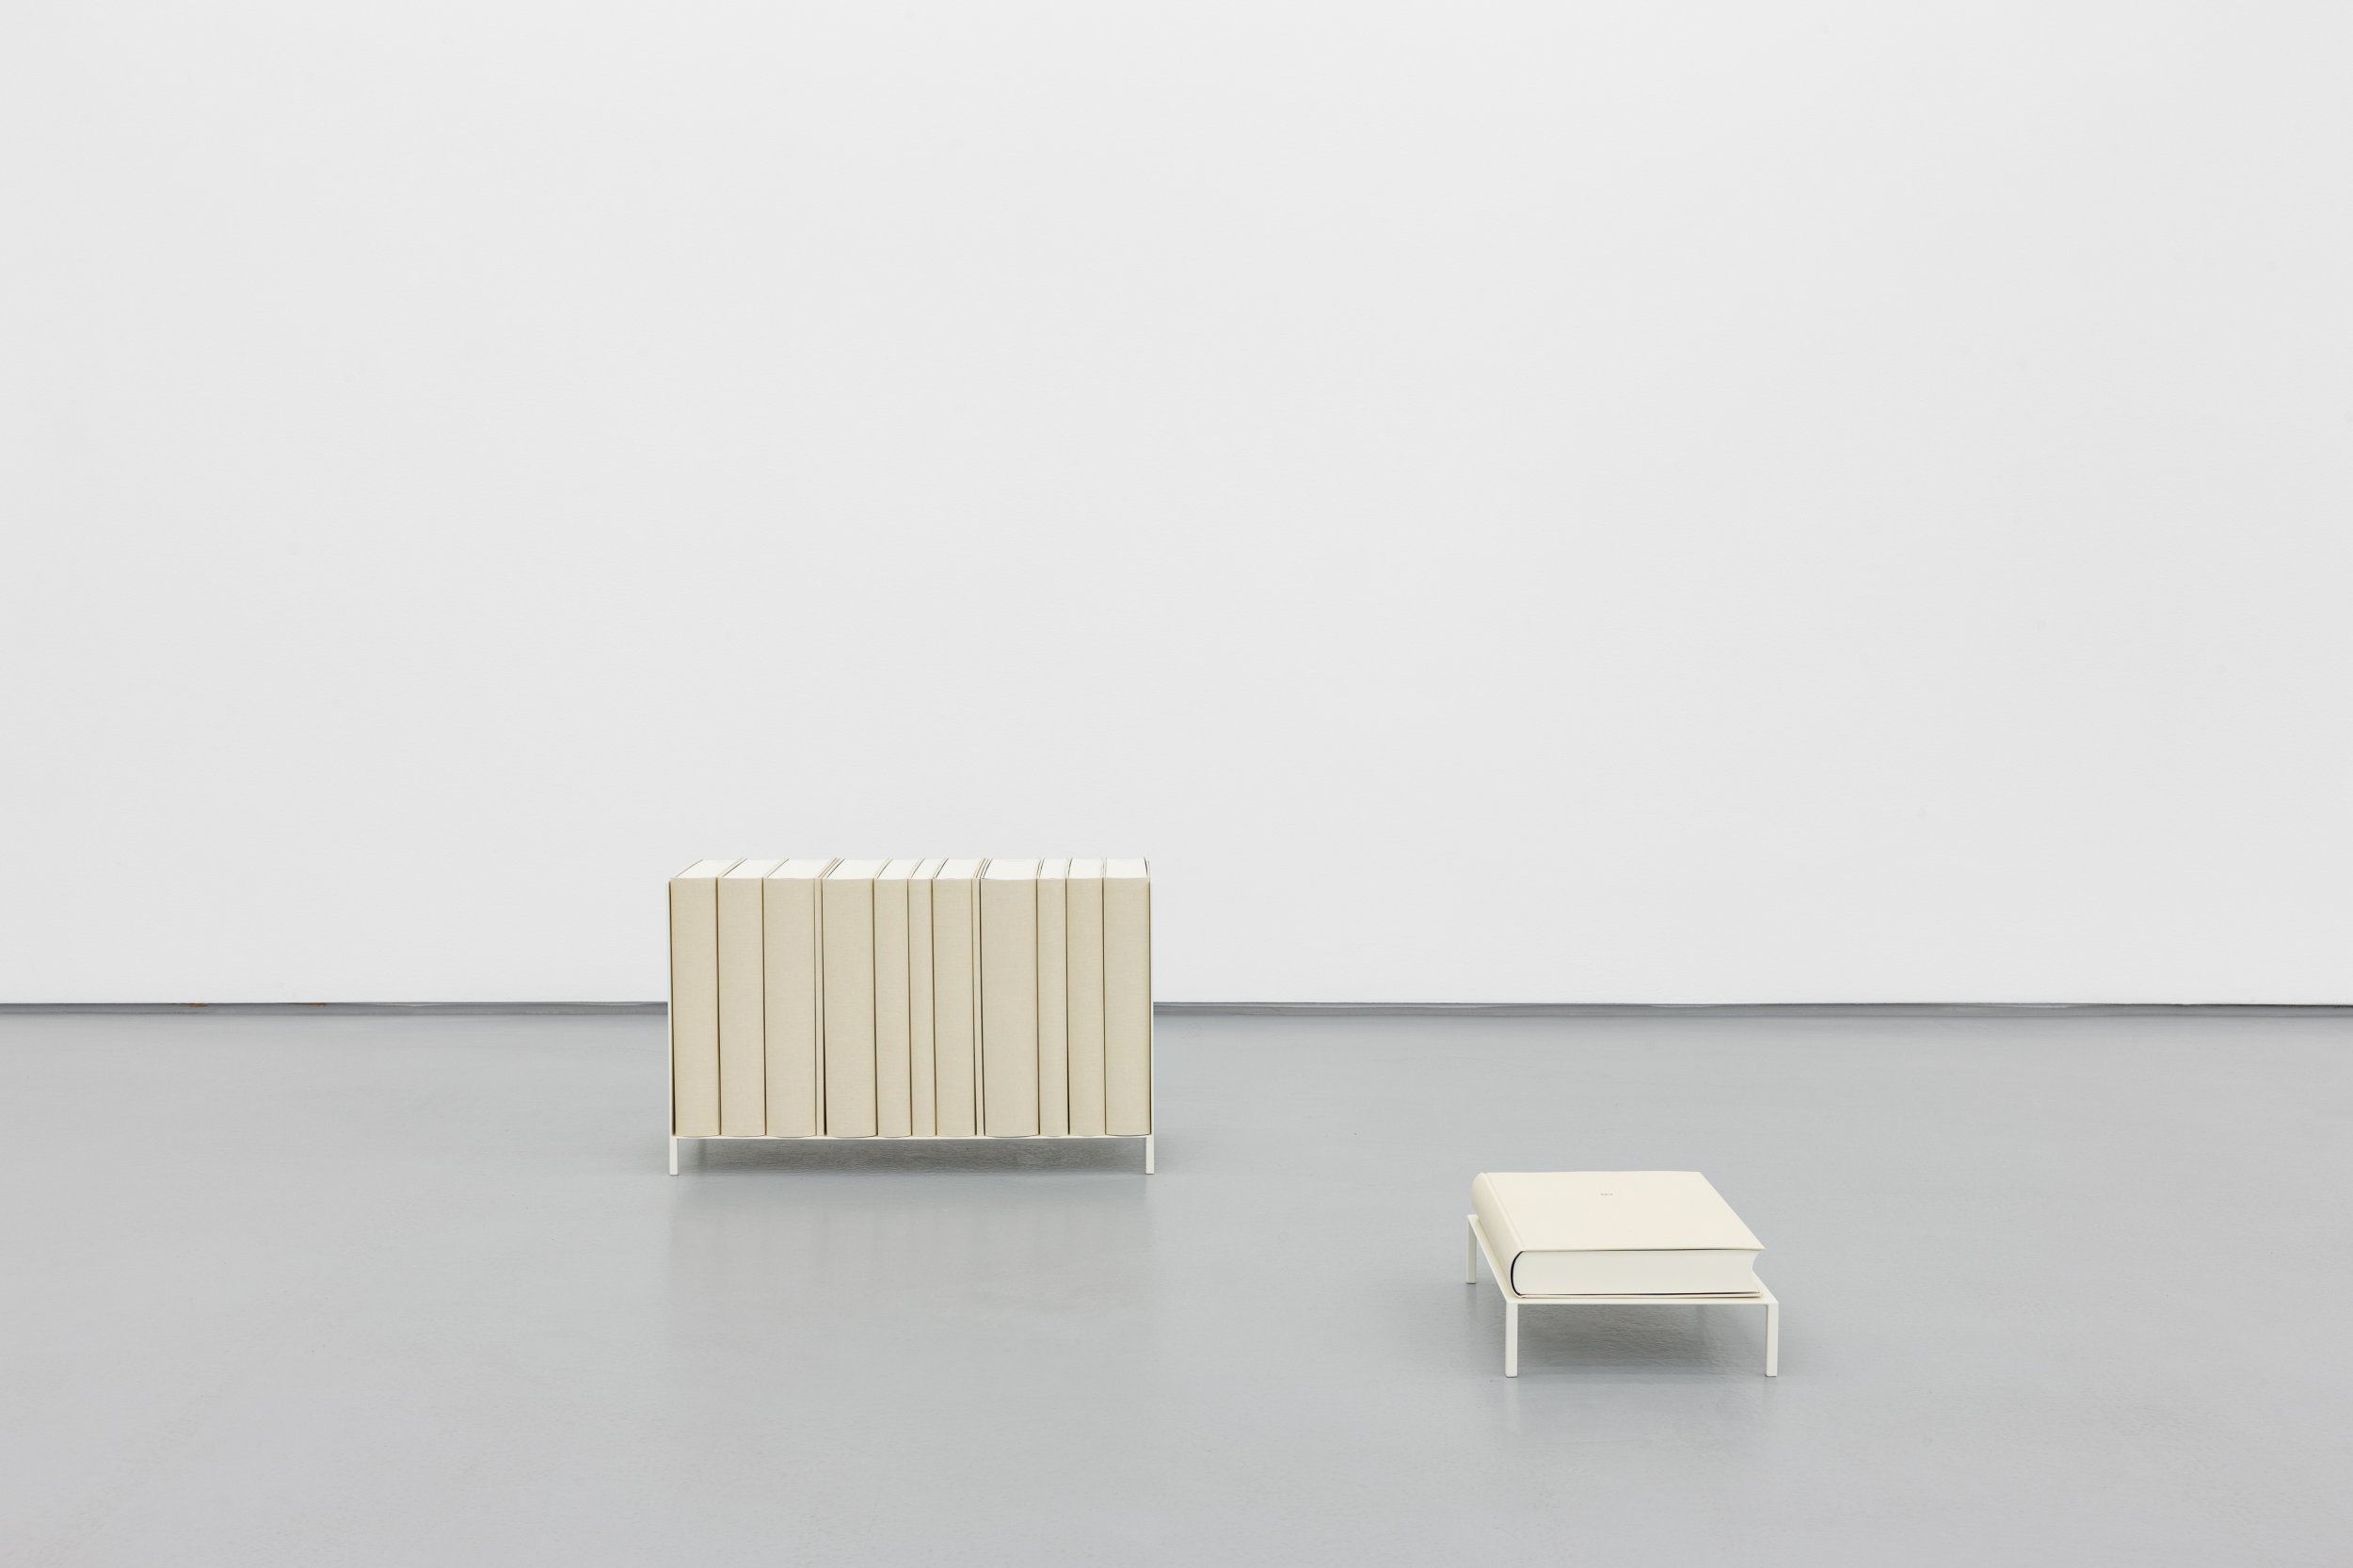 Daniel Gustav Cramer, Sand, 2021. Shelf, table, 14 books. 103 × 91 × 32.5 cm
